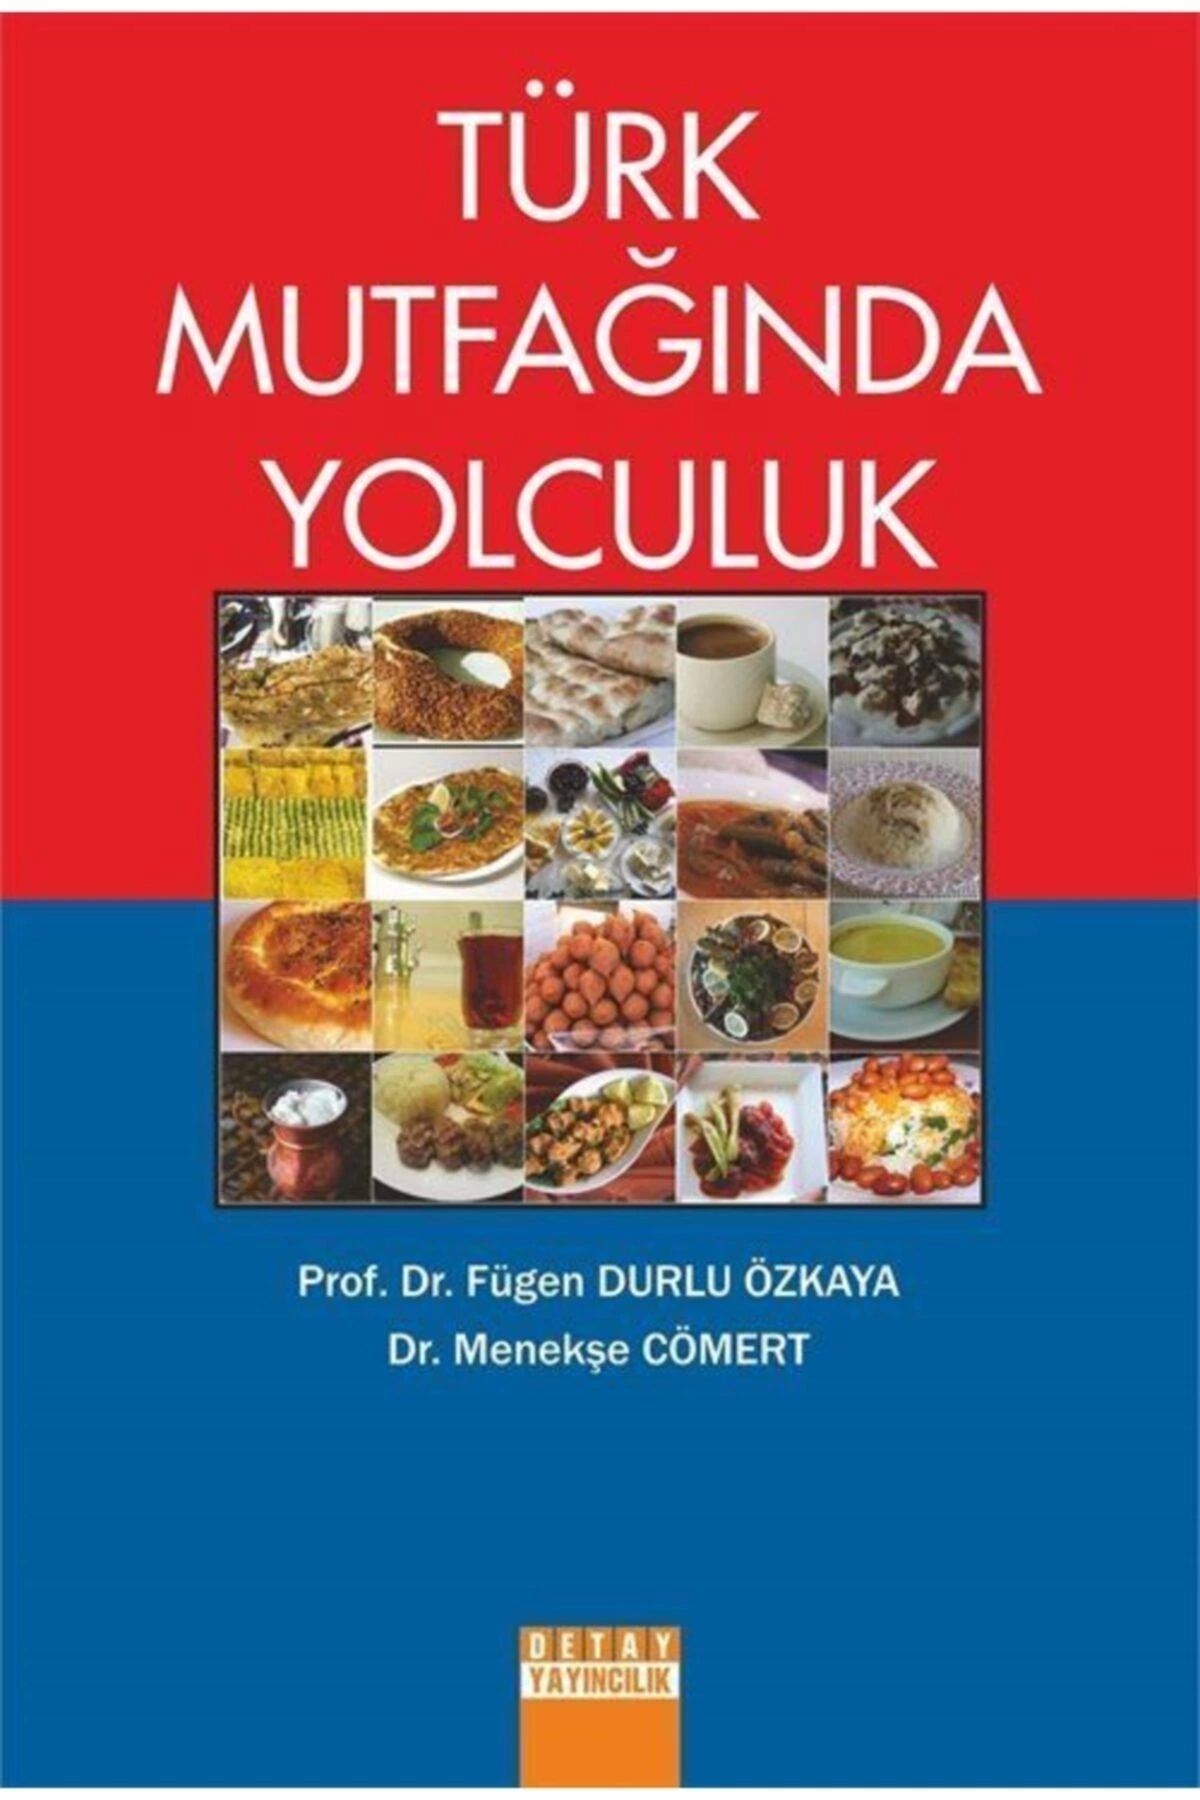 Detay Yayıncılık Türk Mutfağında Yolculuk